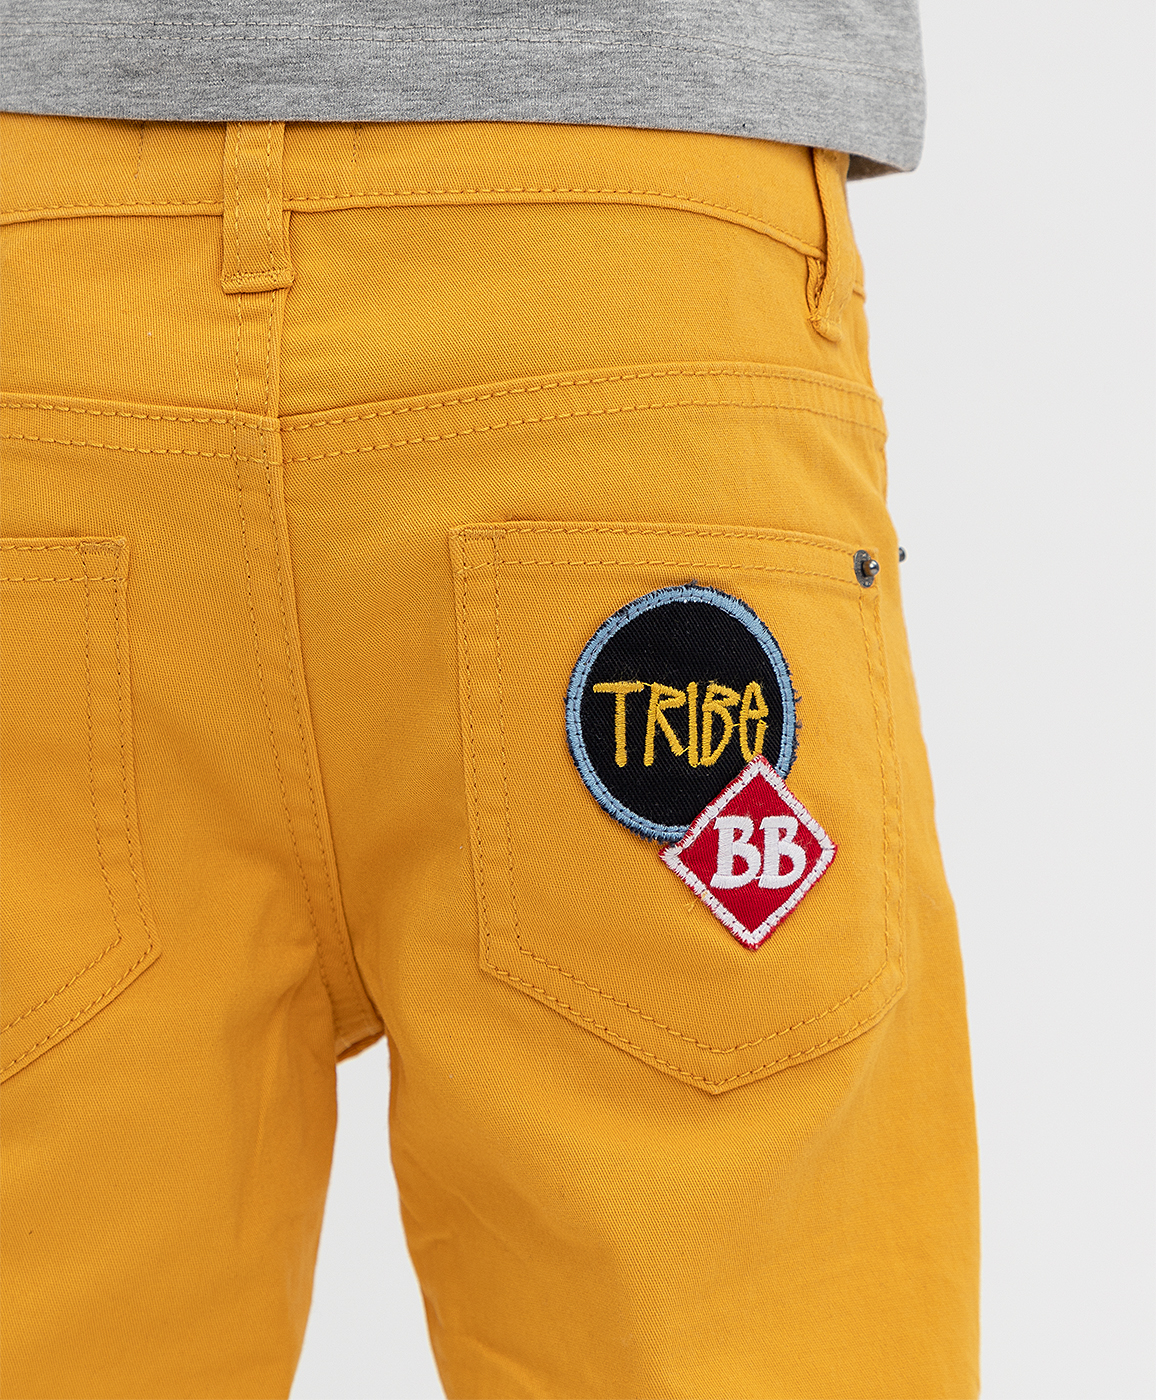 Оранжевые брюки Button Blue 121BBBMC63123200, размер 122, цвет оранжевый regular fit / прямые - фото 3